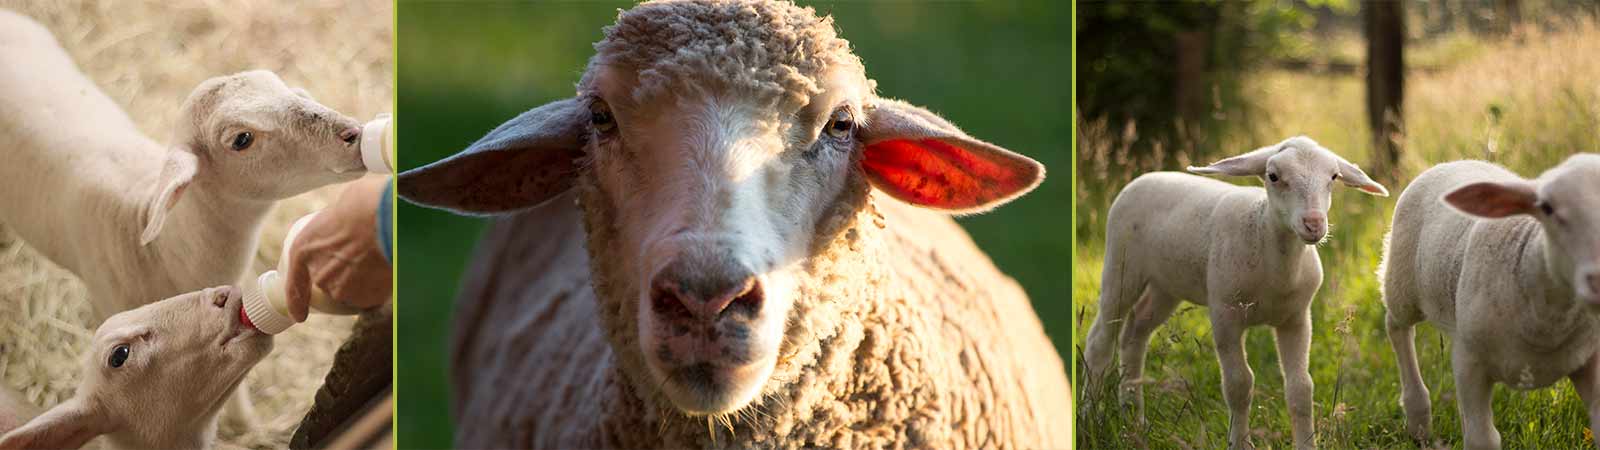 Tierarzt Schafe